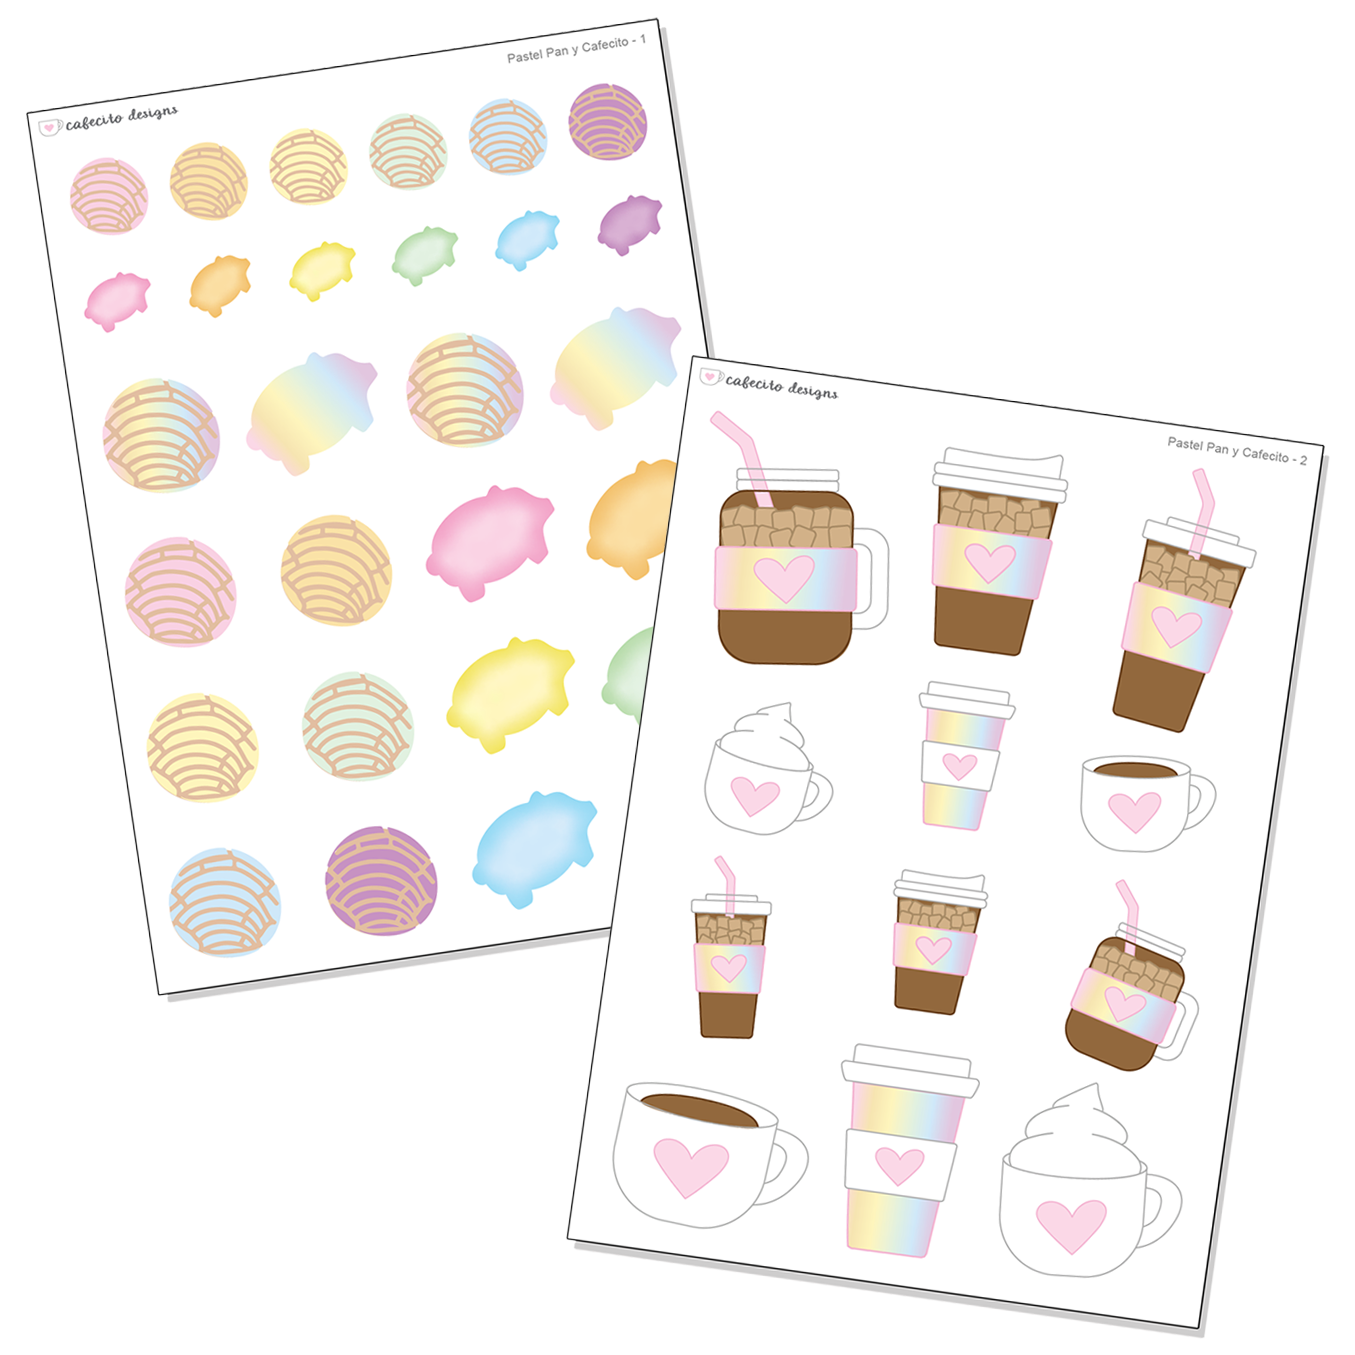 Pastel Pan y Cafecito - Deco Sticker Sheet